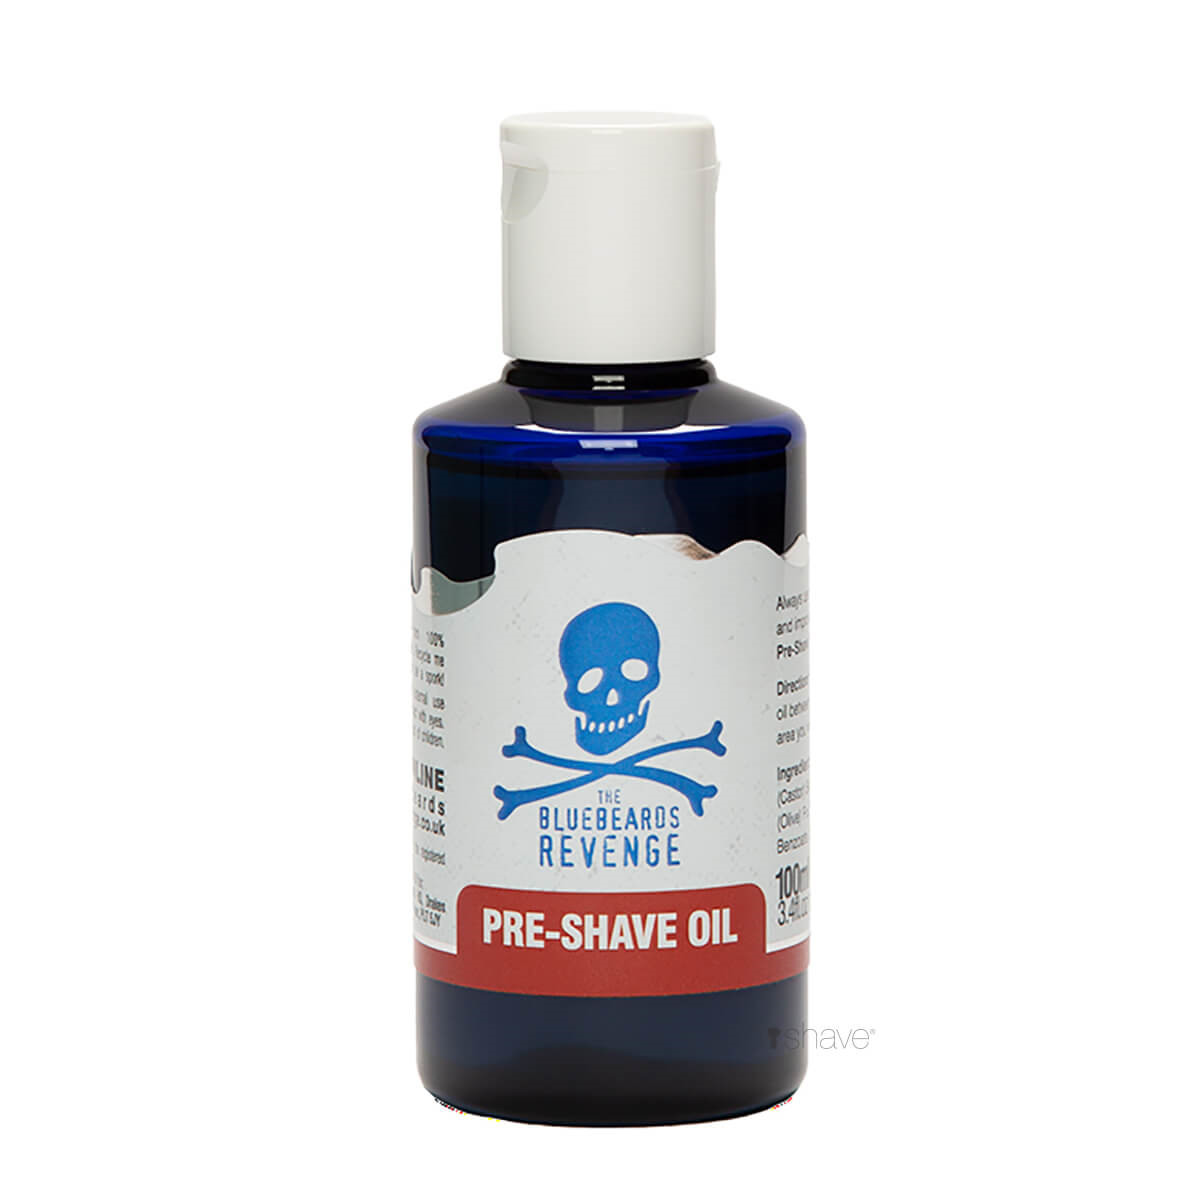 Billede af Bluebeards Revenge Pre-Shave Oil, 100 ml. hos Proshave